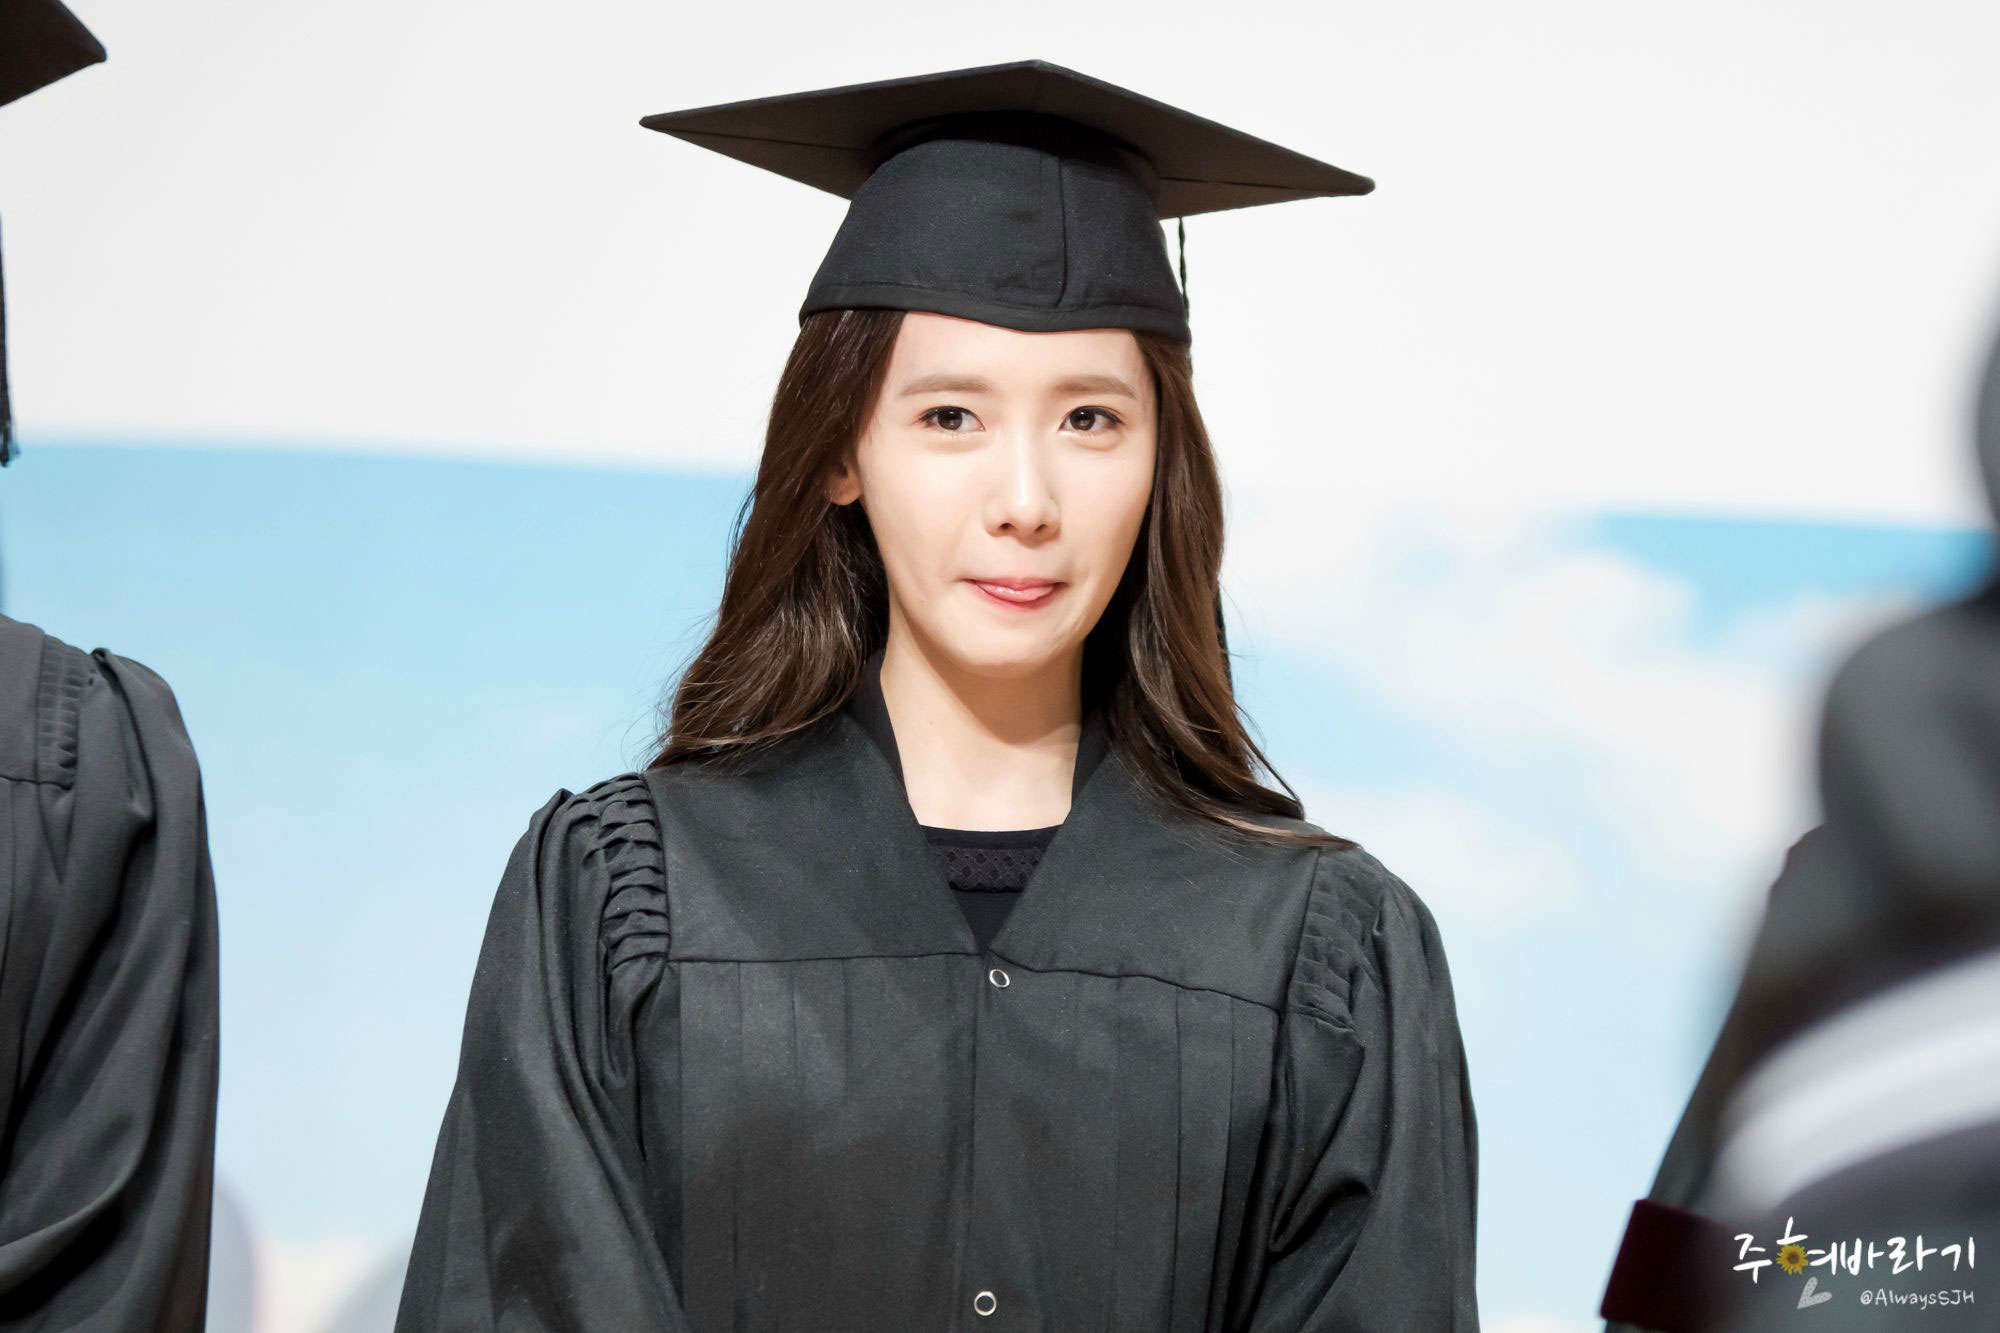 Yoona graduates from university